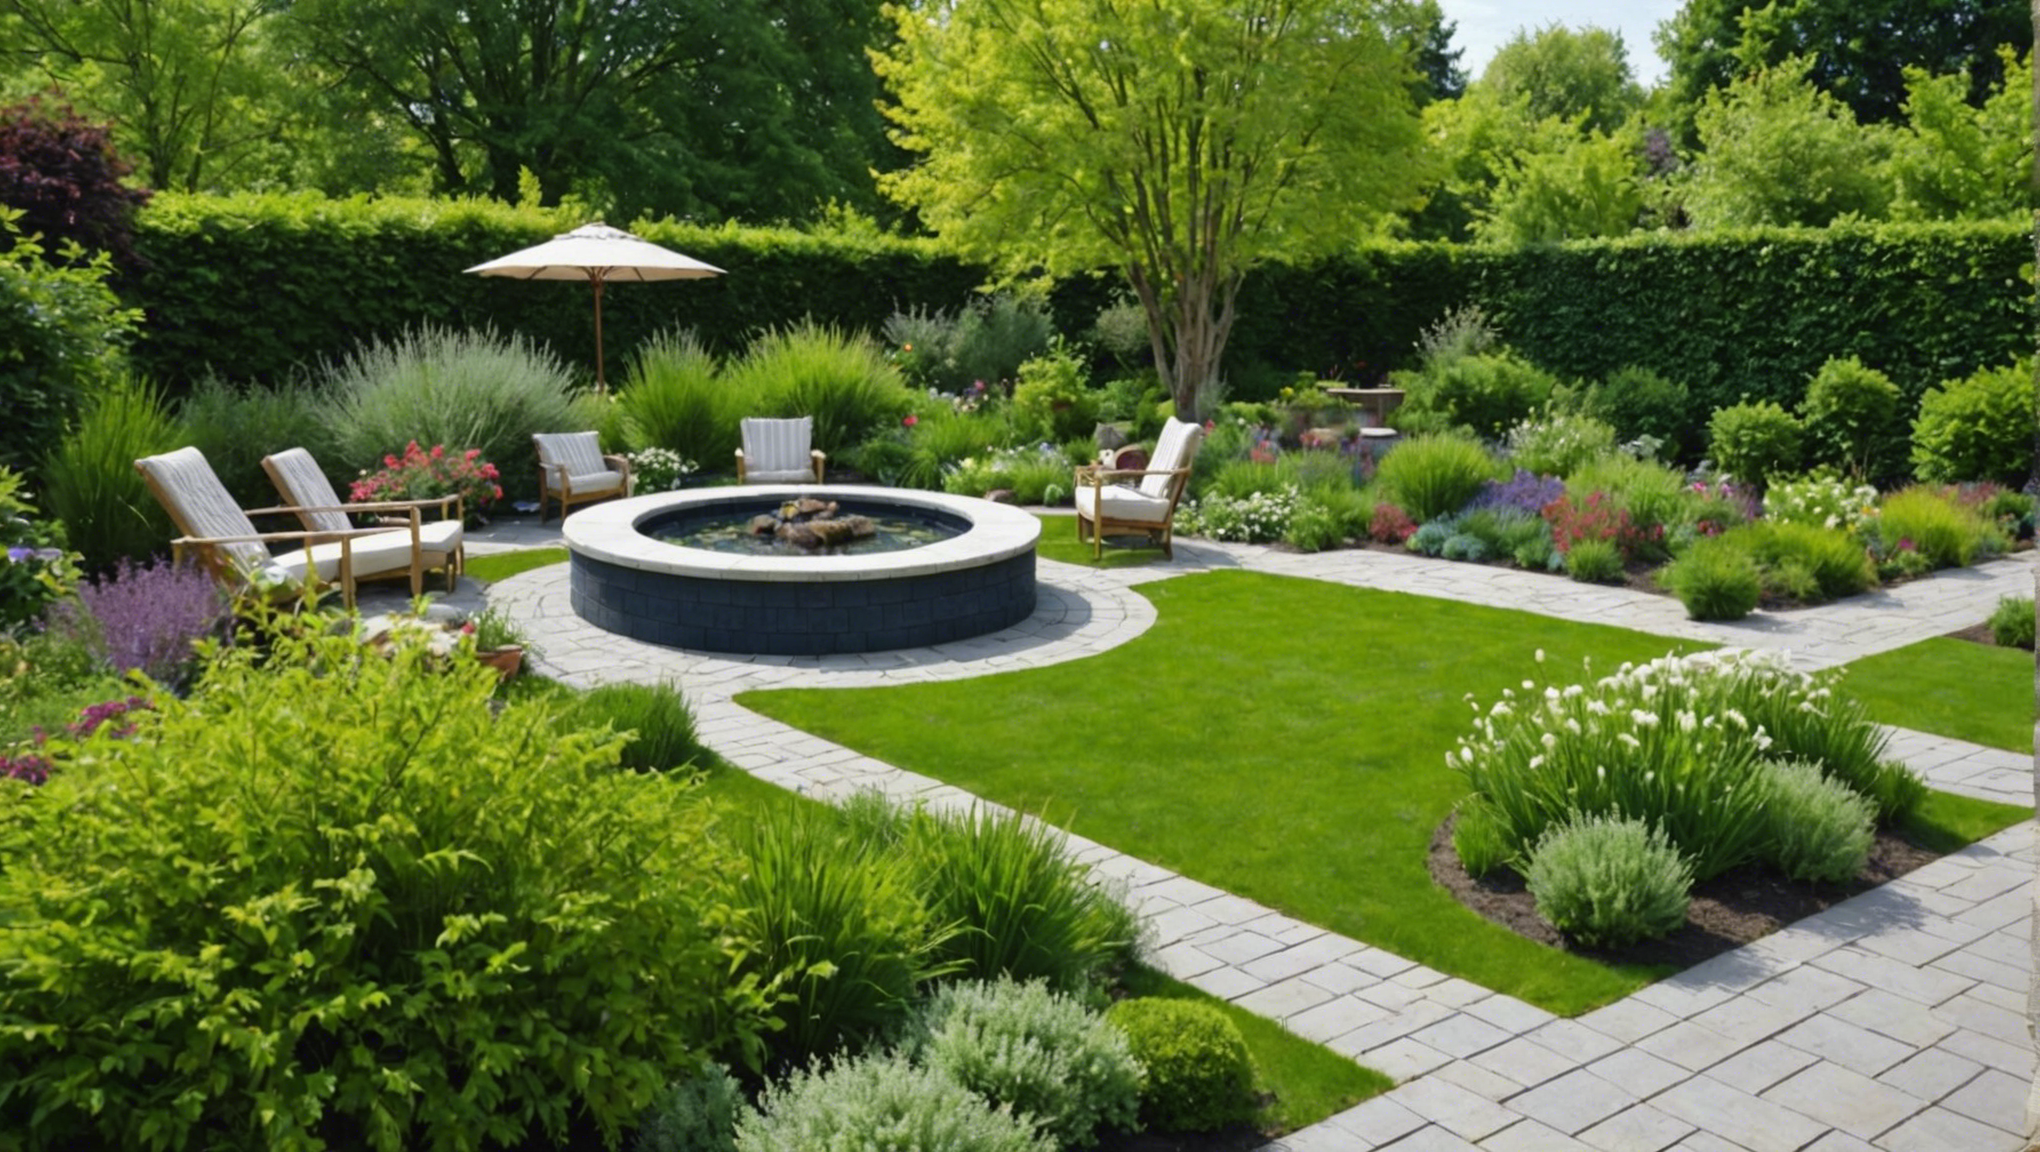 découvrez nos conseils pour créer un aménagement paysager qui transformera votre jardin en une oasis de verdure. profitez d'un espace extérieur harmonieux et agréable grâce à nos astuces d'aménagement paysager.